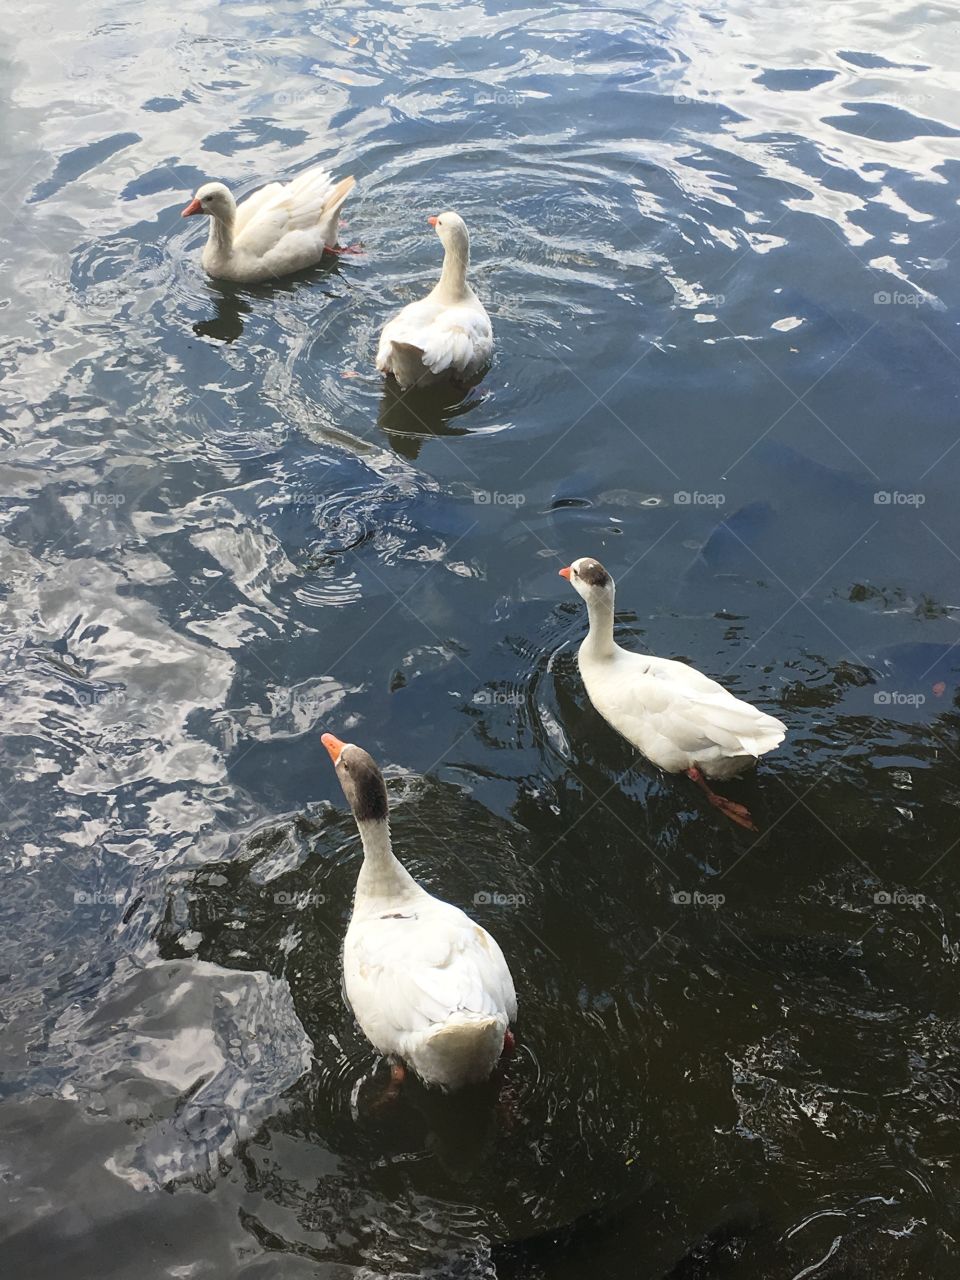 Os gansos estavam felizes passeando no lago, nadando numa relax total... que tranquilidade!